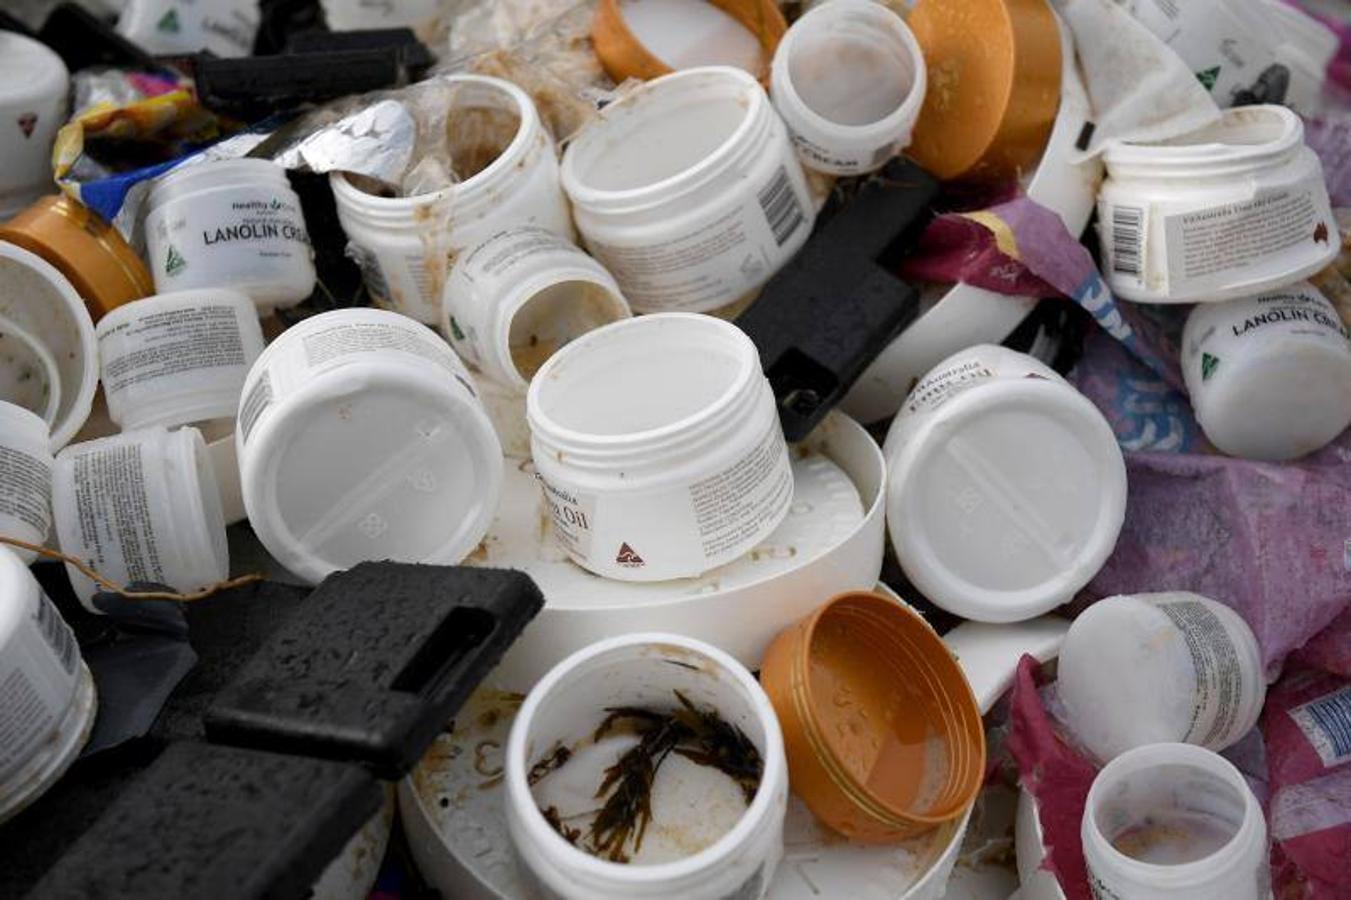 Grupos de limpieza limpian escombros en la playa en Hawks Nest cerca de Port Stephens, Nueva Gales del Sur (Australia). El buque portacontenedores YM Efficiency perdió 83 contenedores por la borda el 1 de junio y la basura de los contenedores se está acumulando en las playas a lo largo de la costa de Australia. 